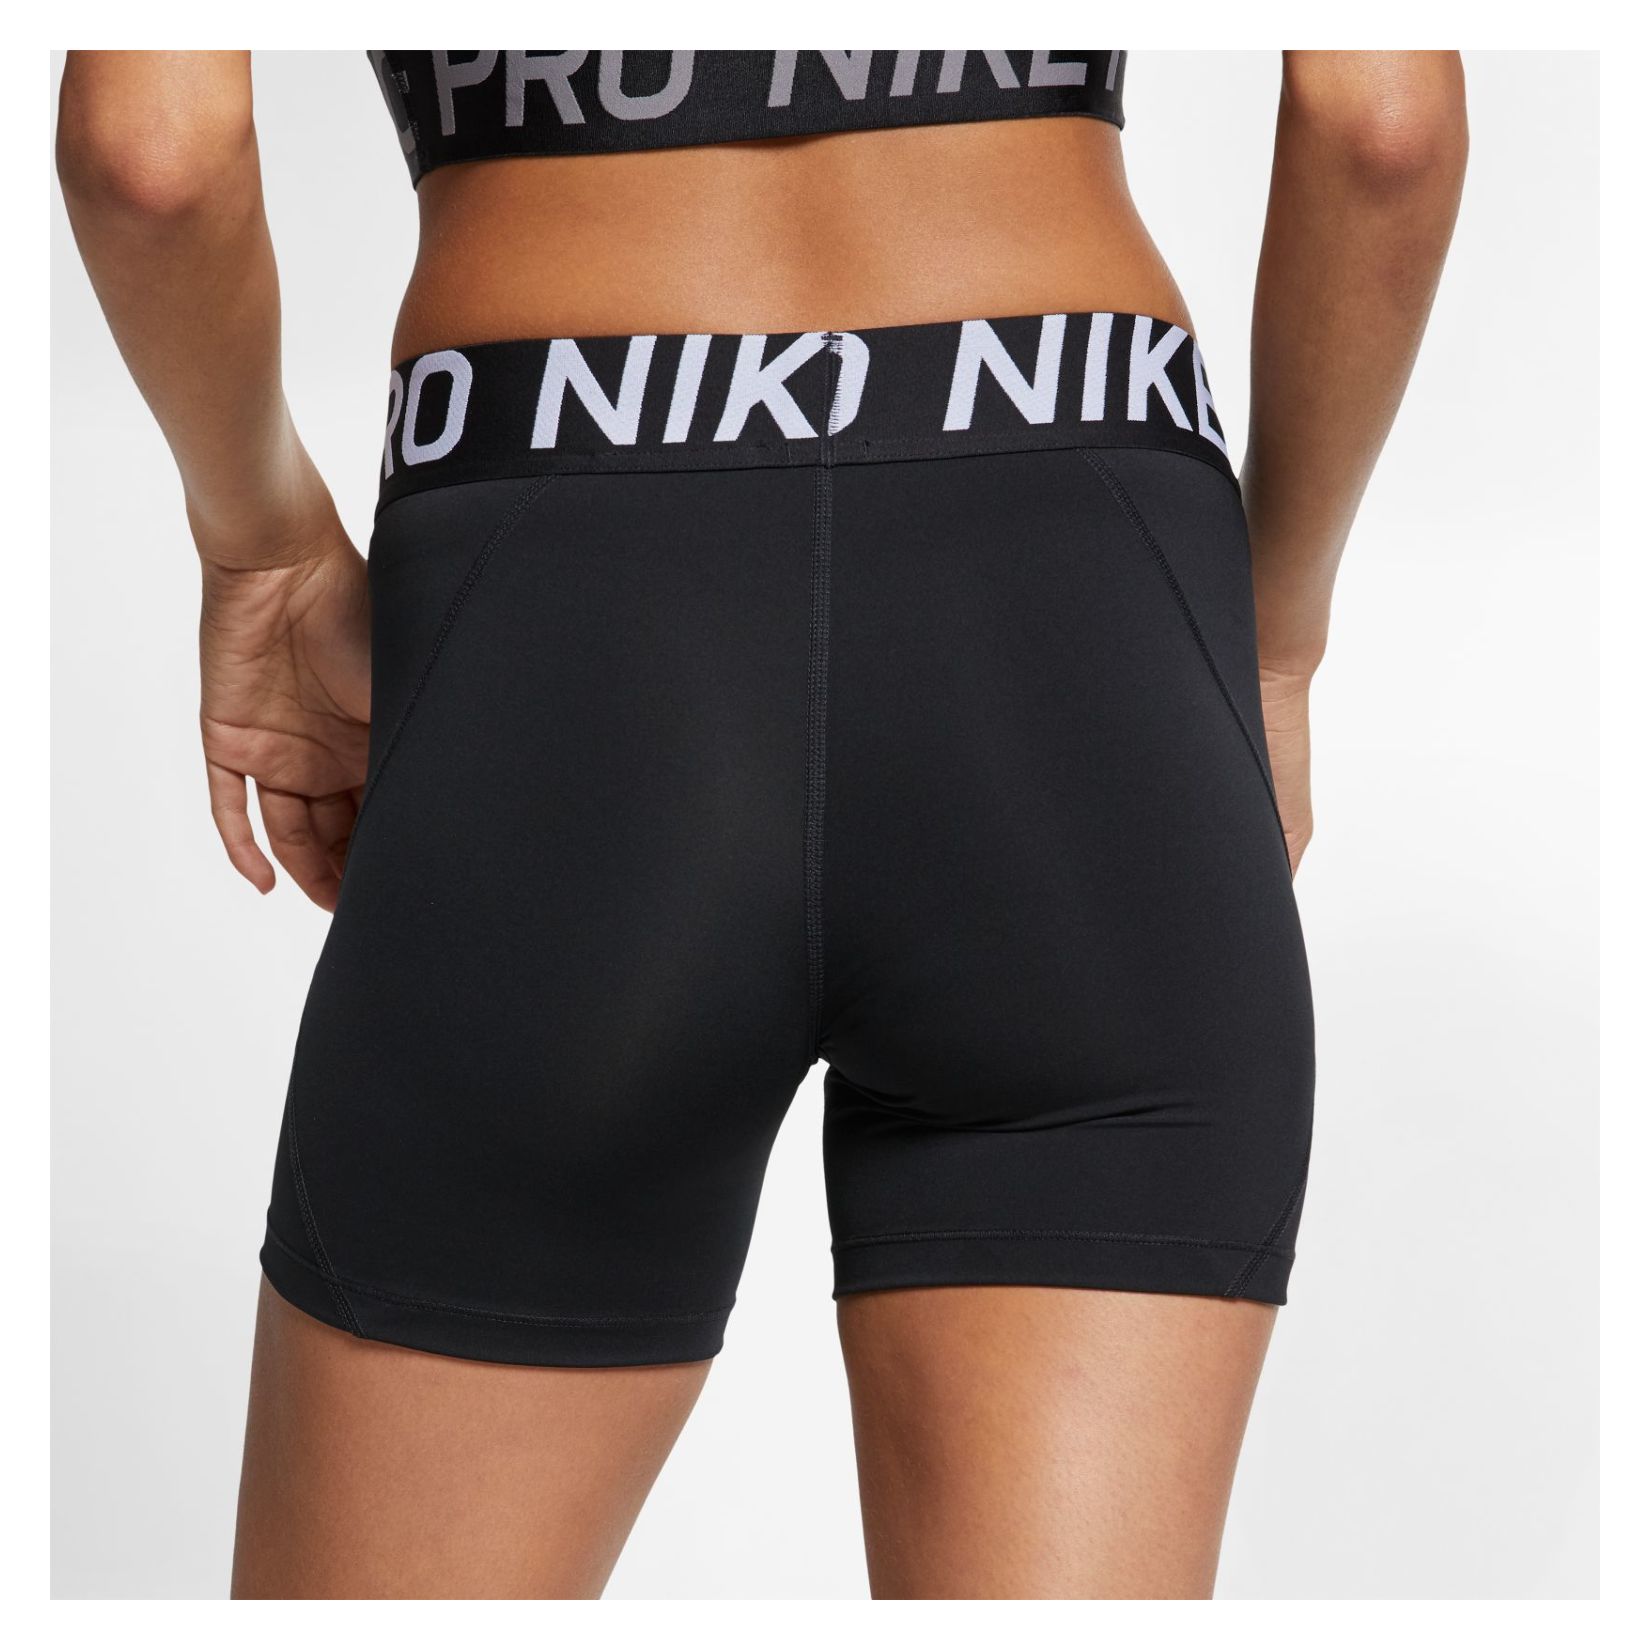 nike pro women's shorts 5 inch